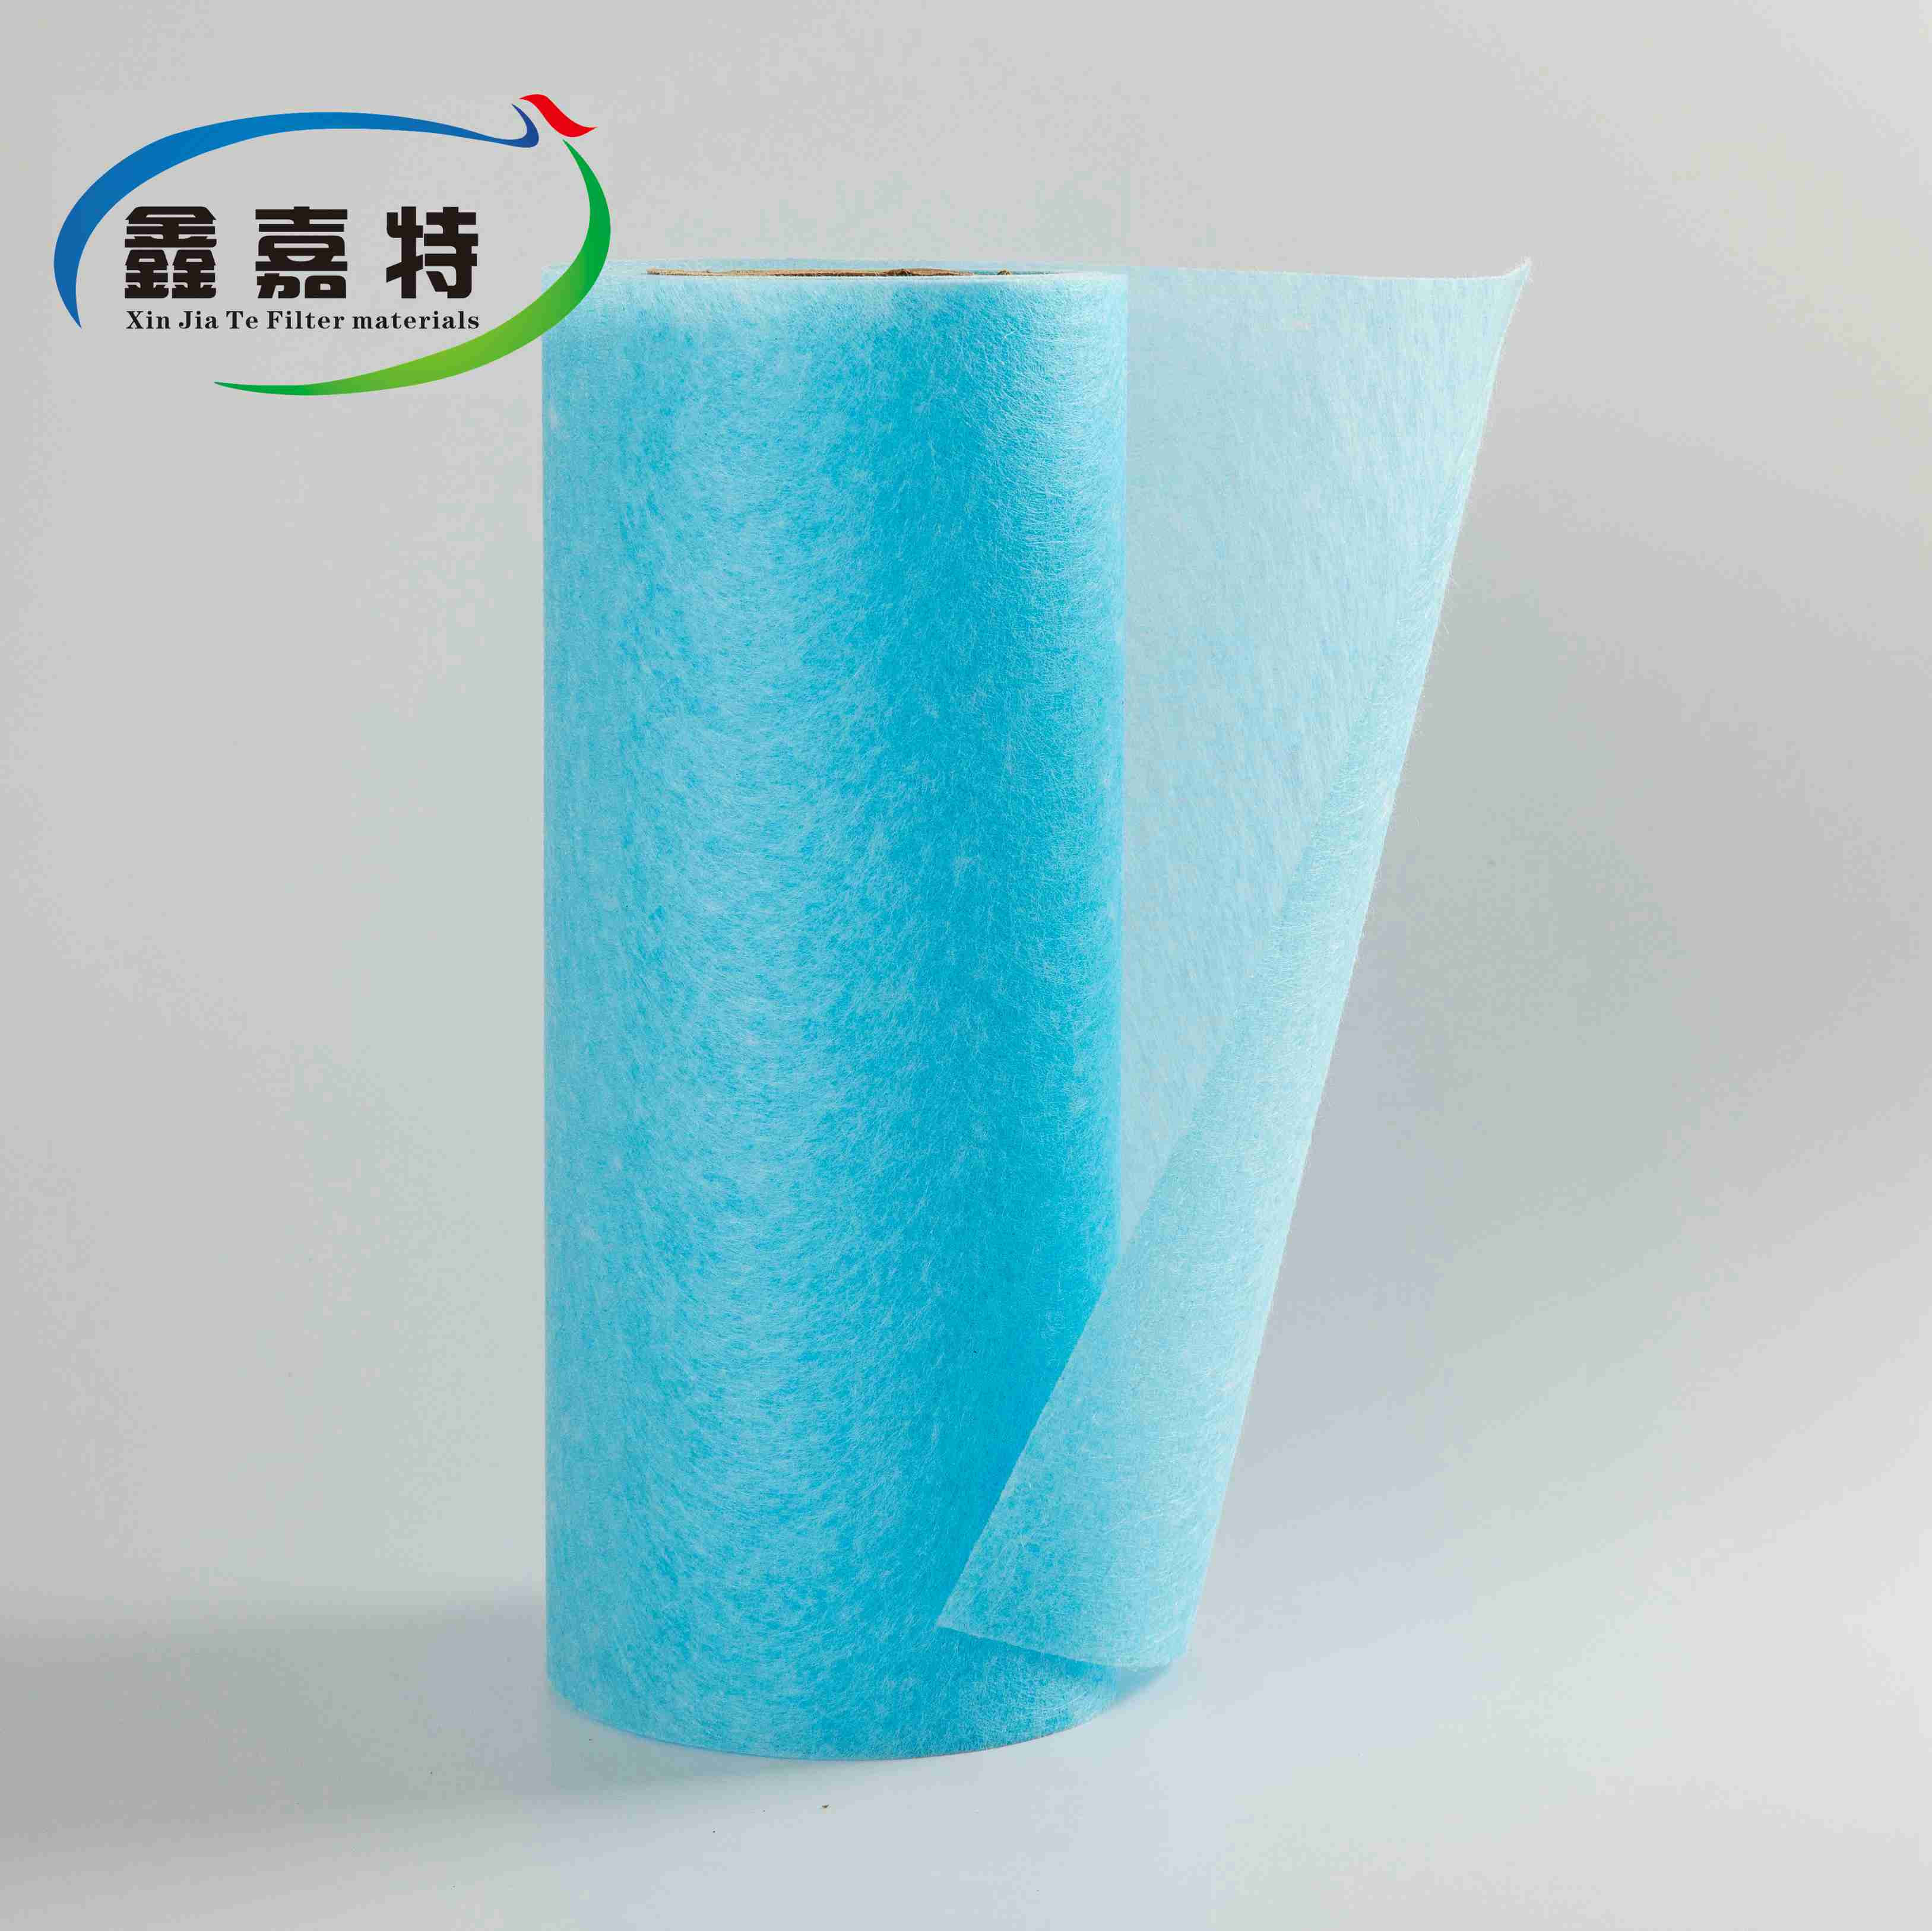 No tejido de alta hidrofobicidad a prueba de agua para medios de filtro de aire Capa de soporte meltblown